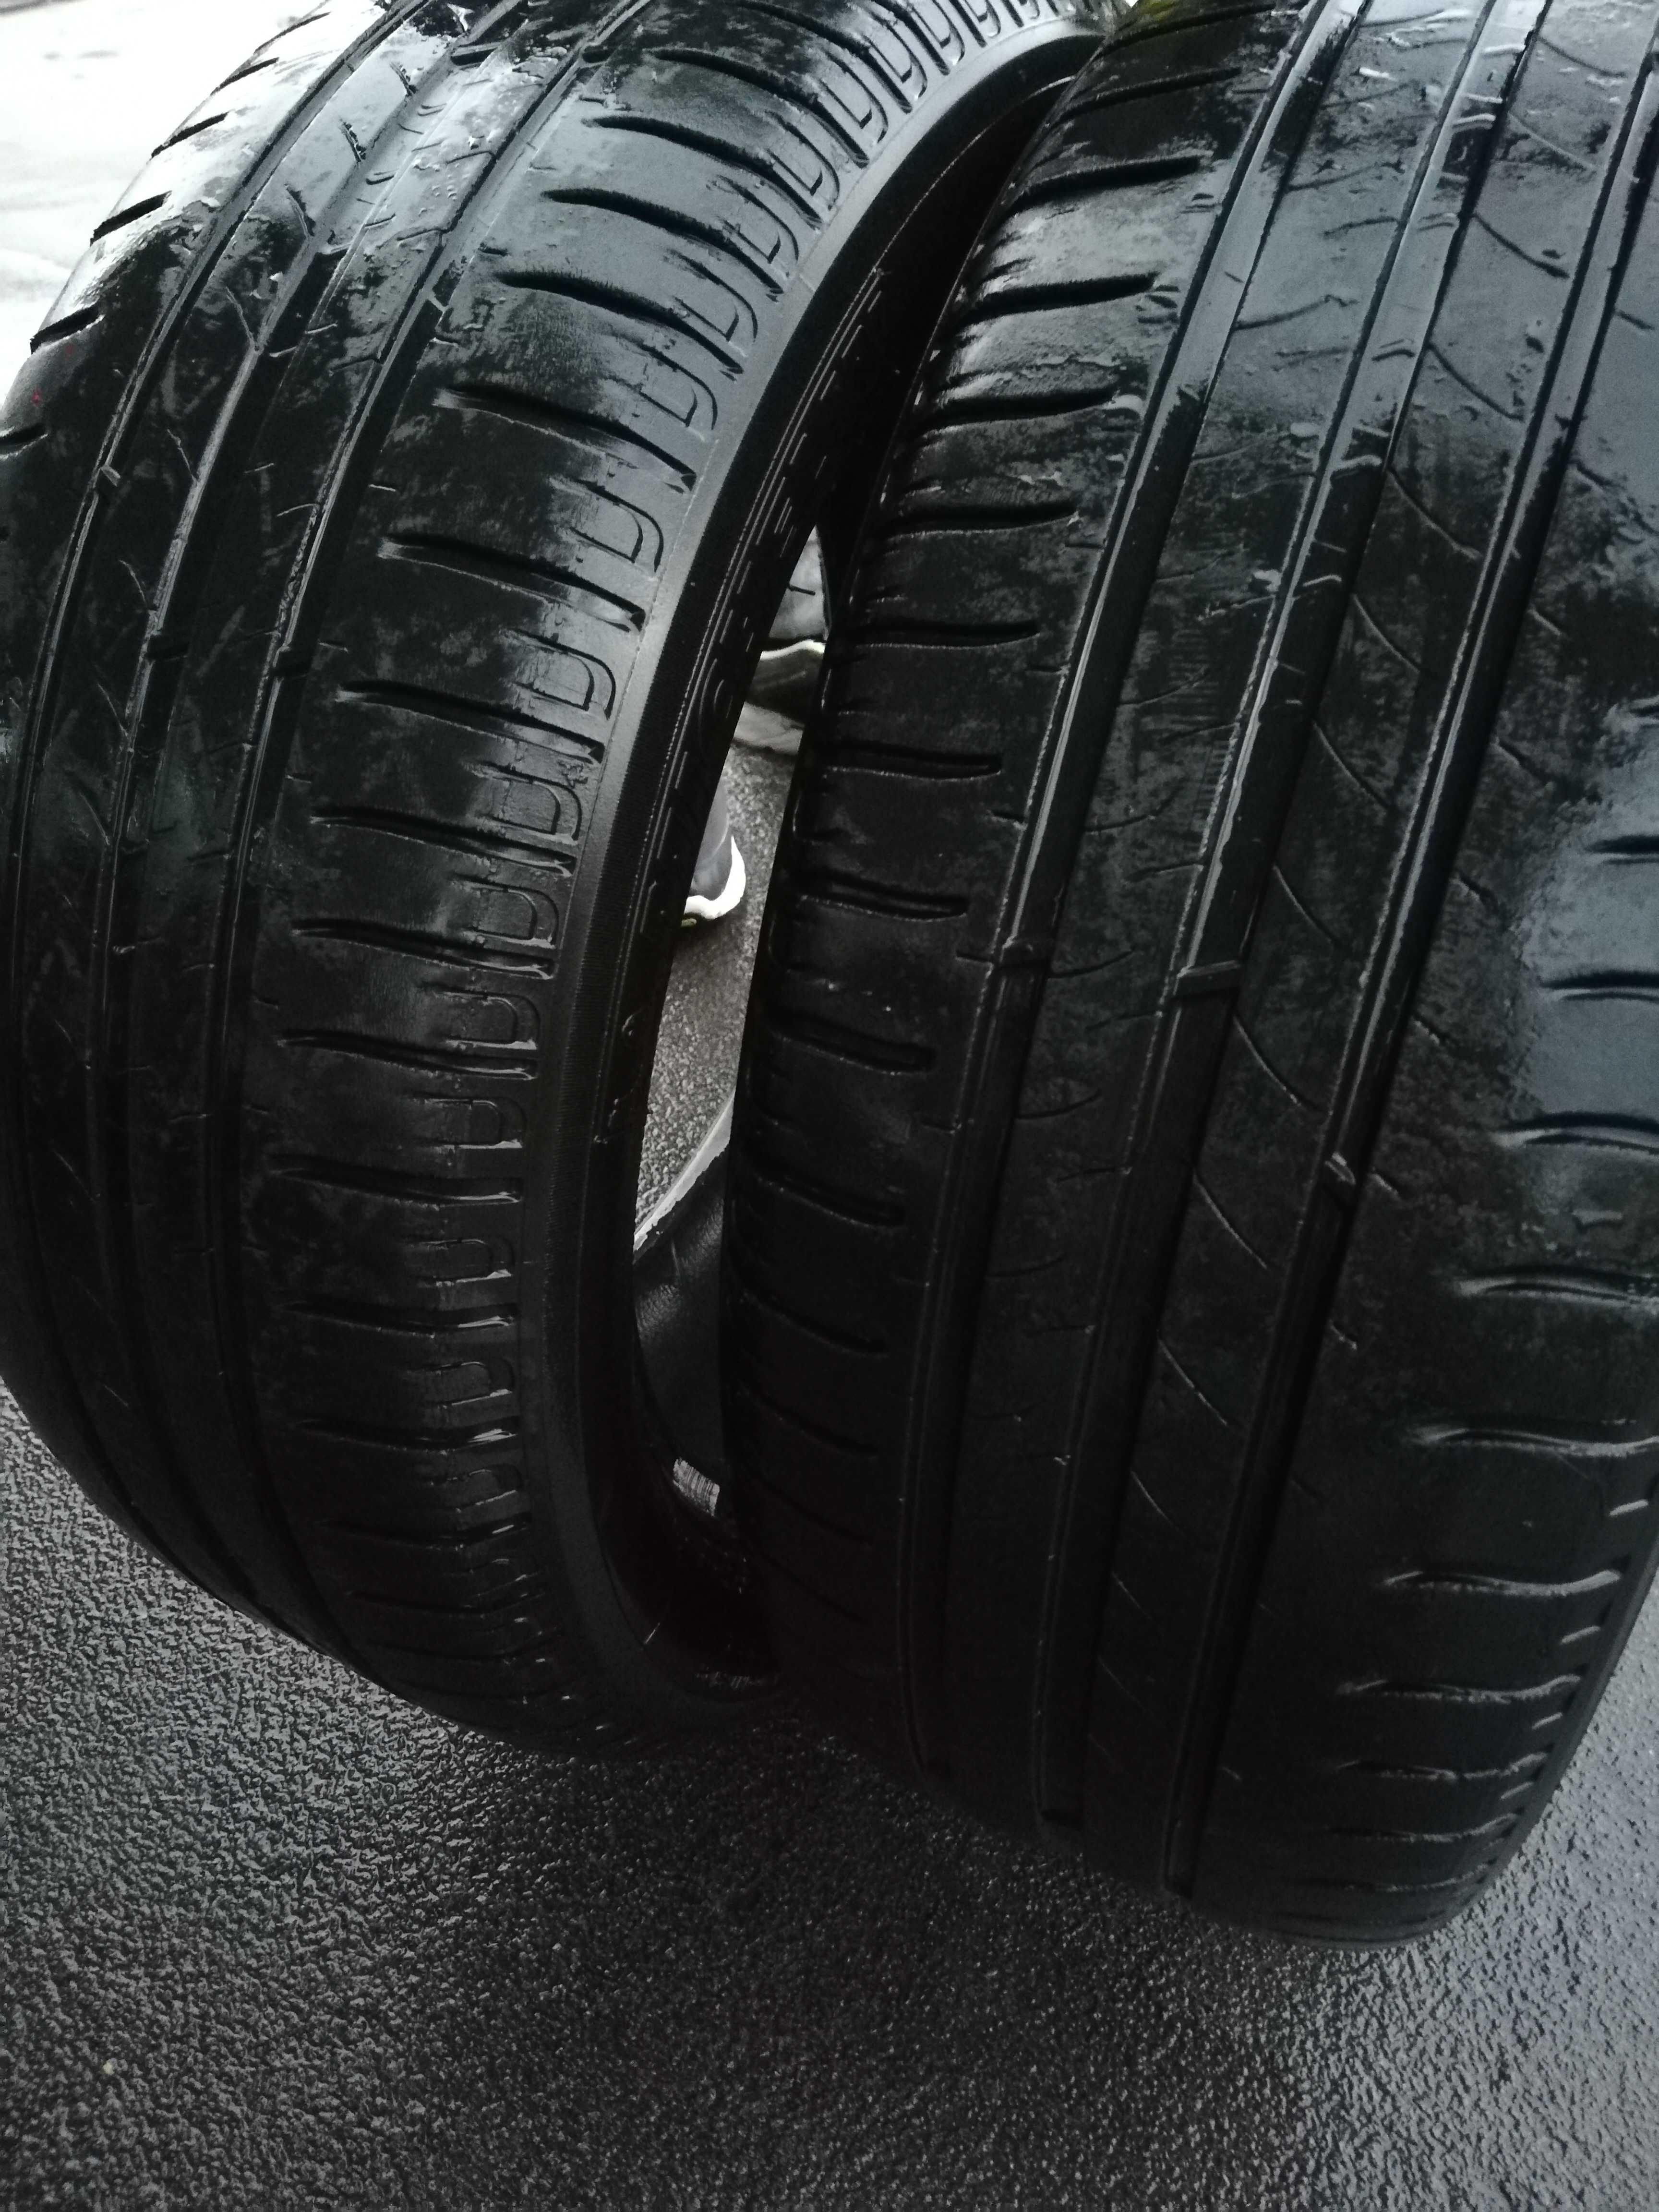 2 conjuntos de 2 pneus cada GOODYEAR e Michelin.